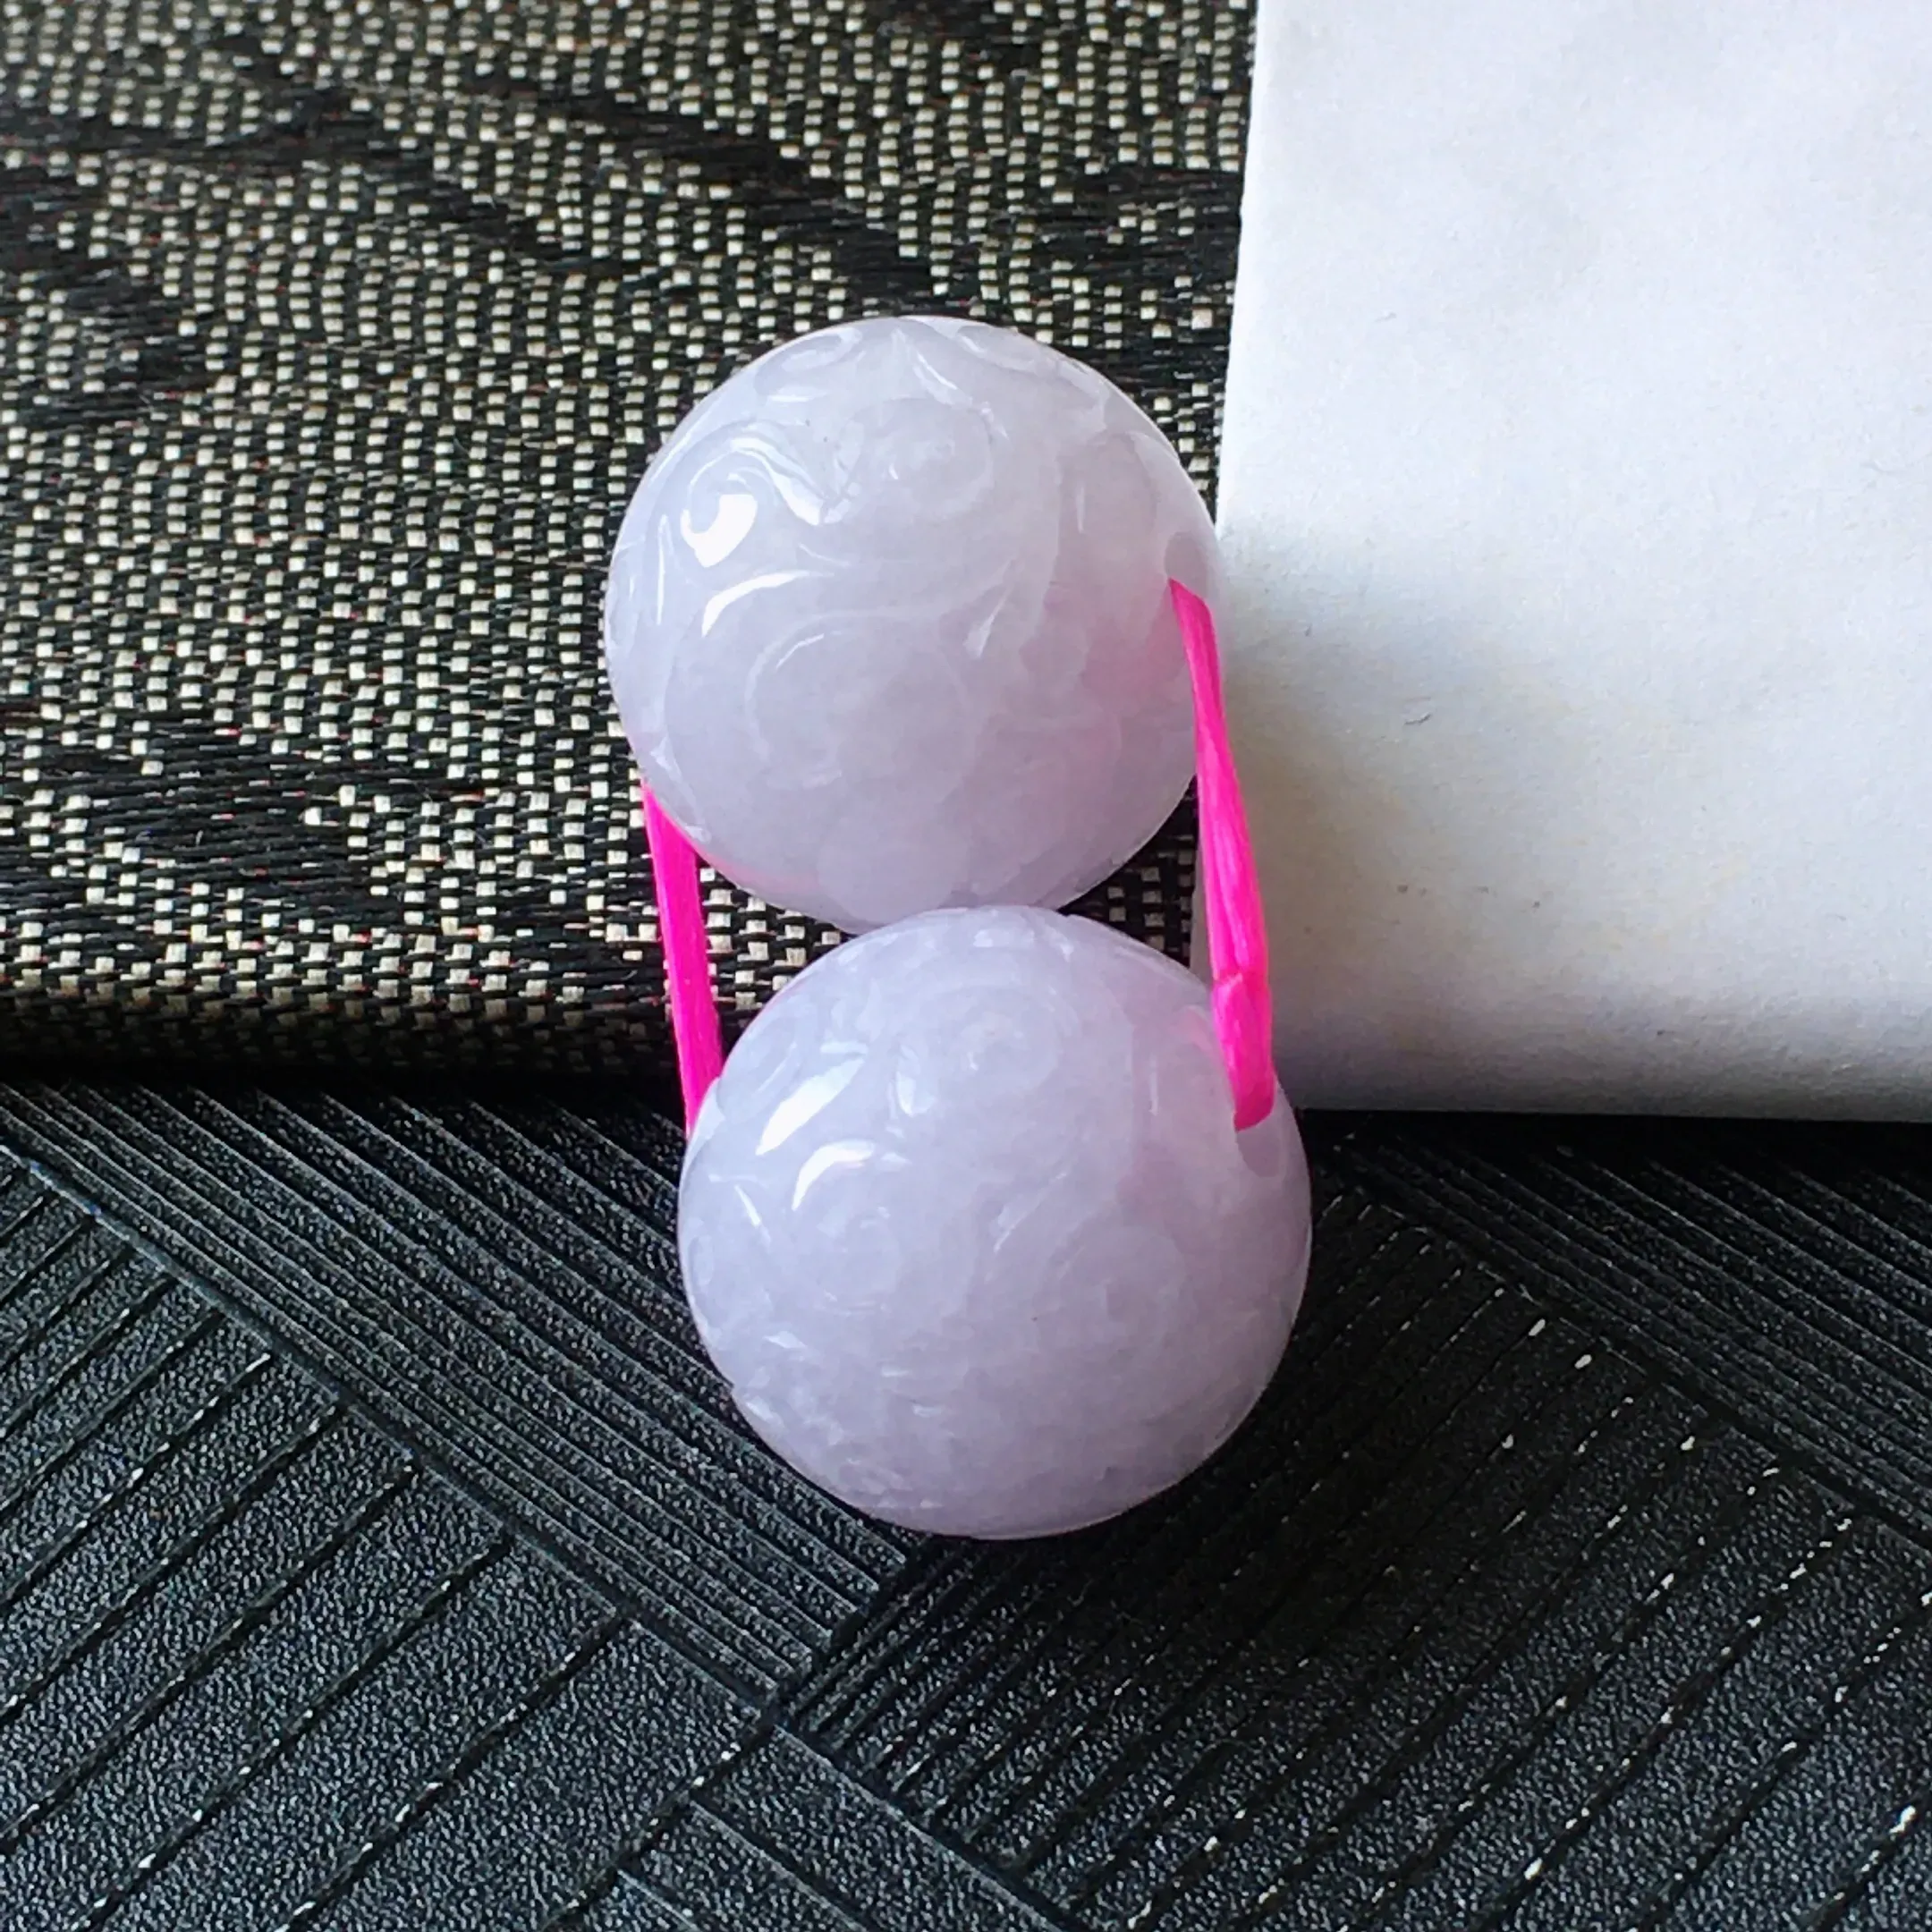 翡翠紫罗兰雕花龙珠裸石一对，种水好玉质细腻温润，颜色漂亮。尺寸：15.2mm/15.0mm